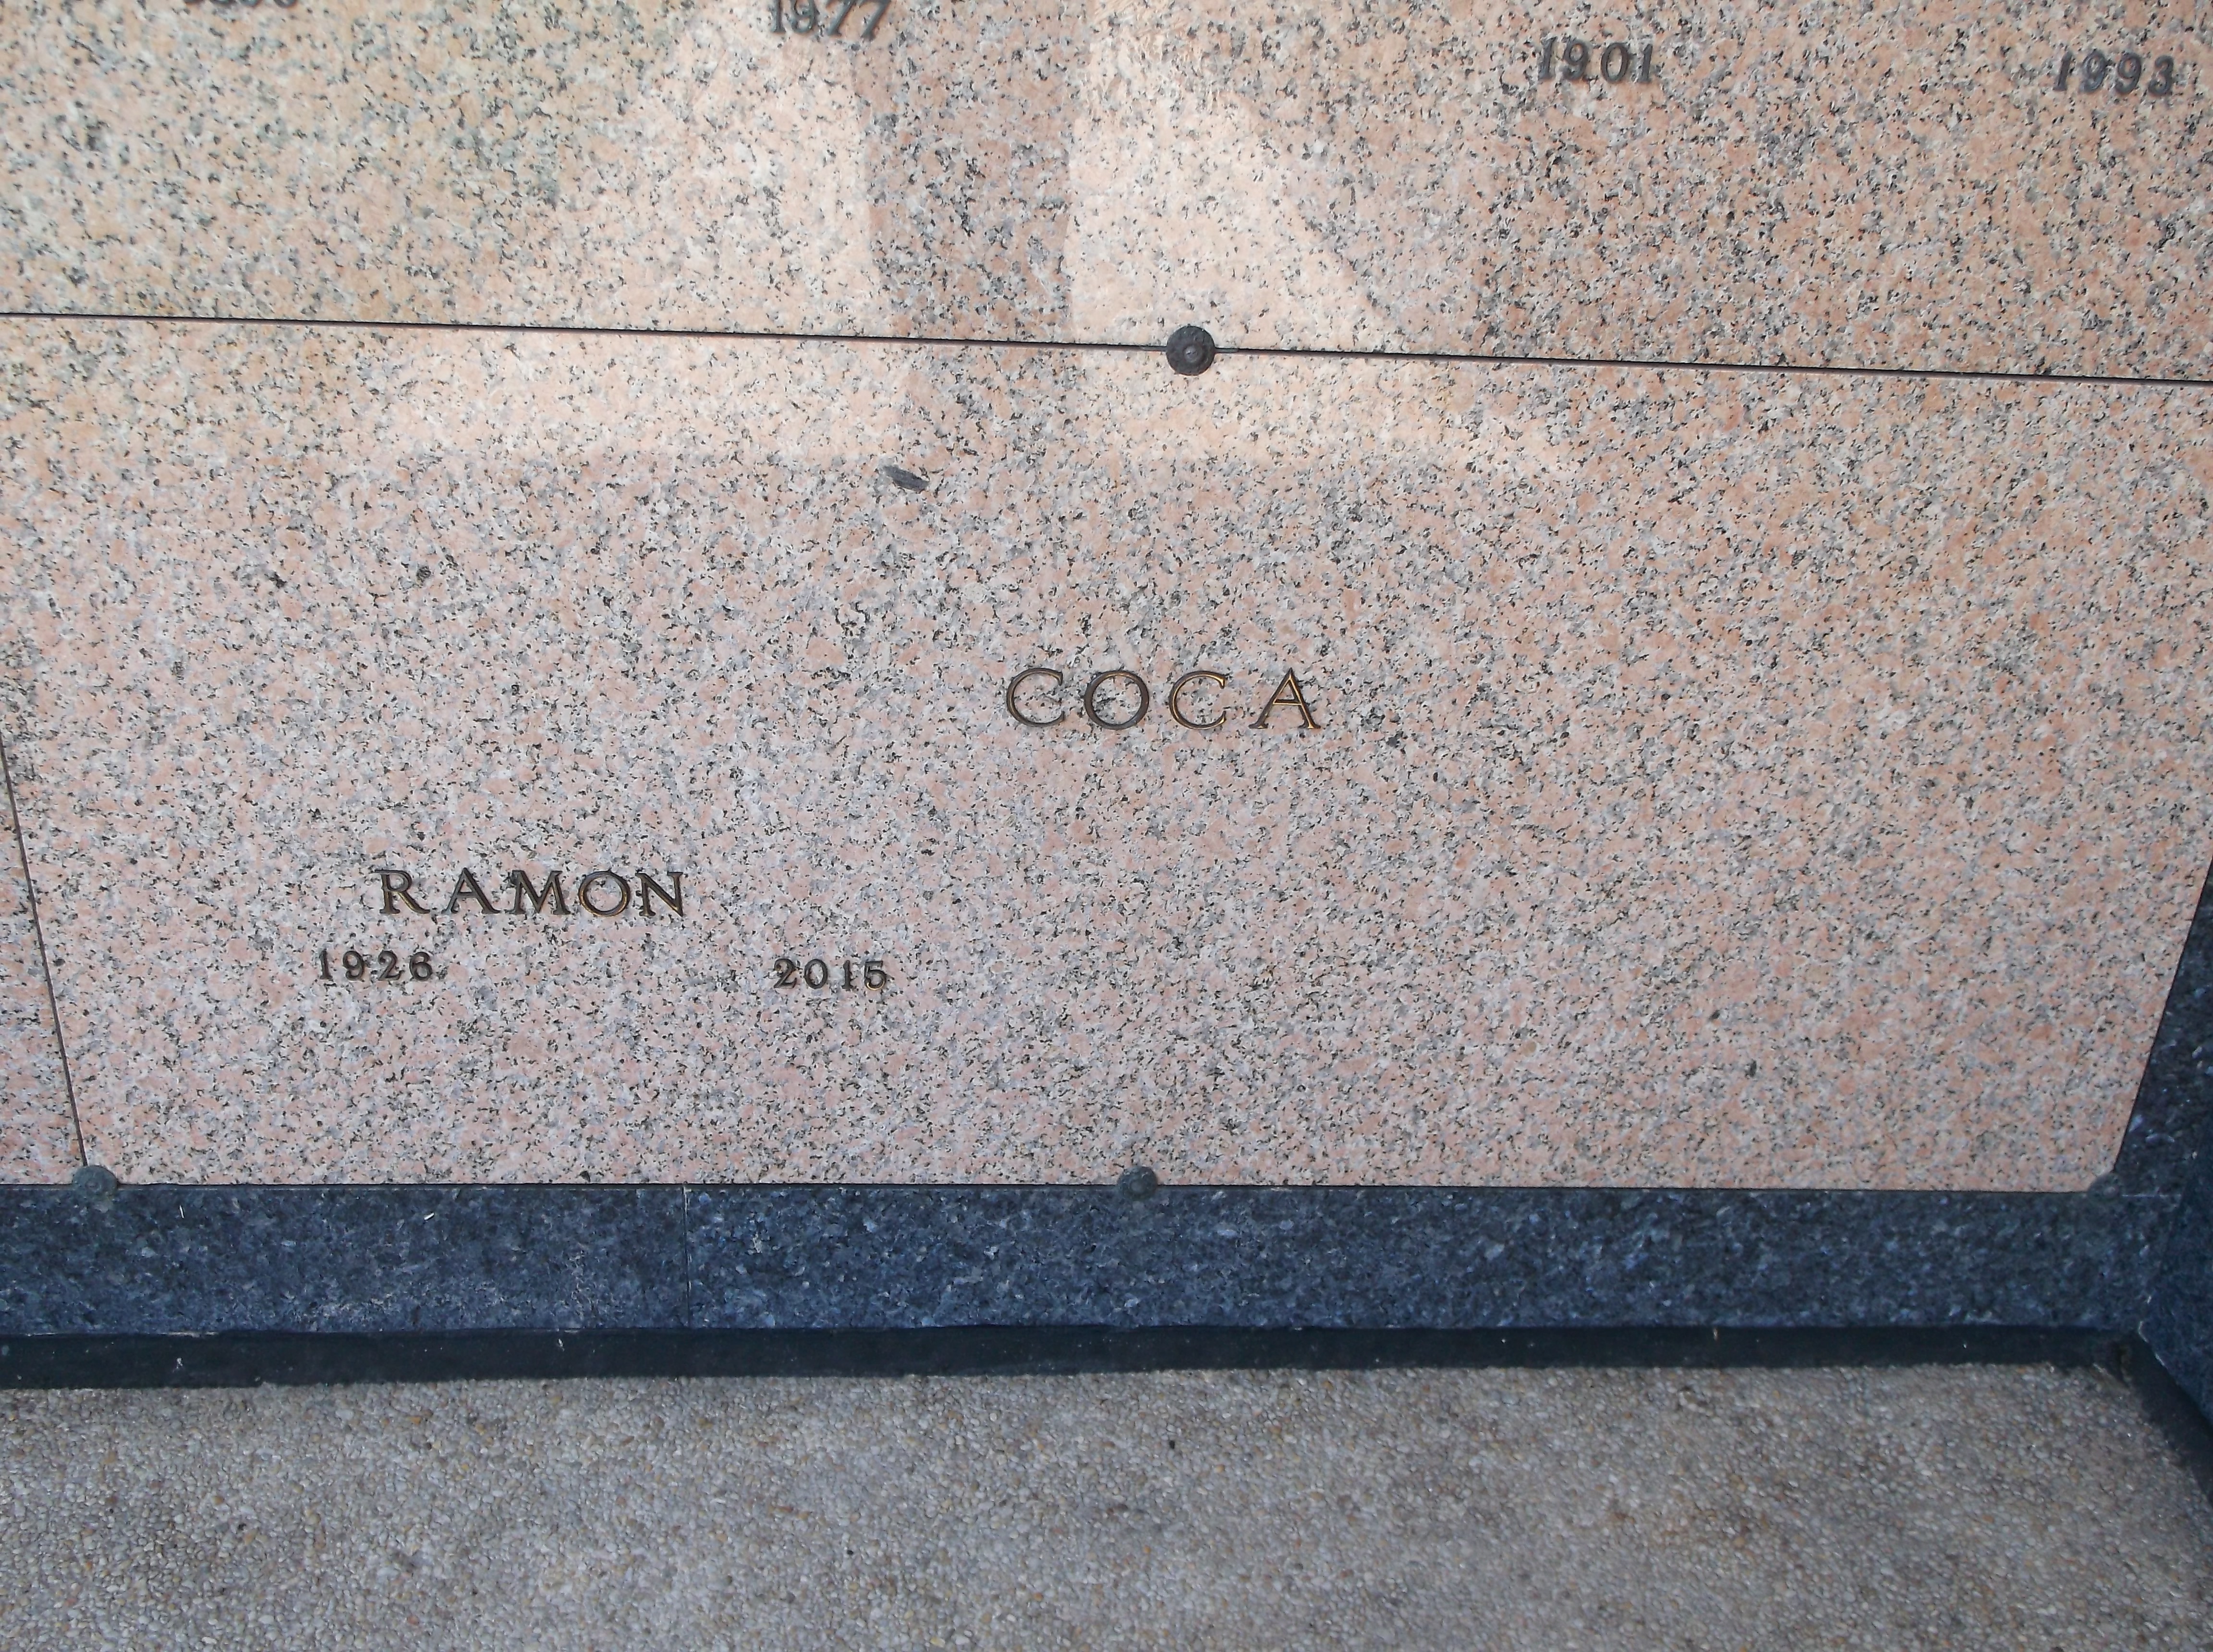 Ramon Coca